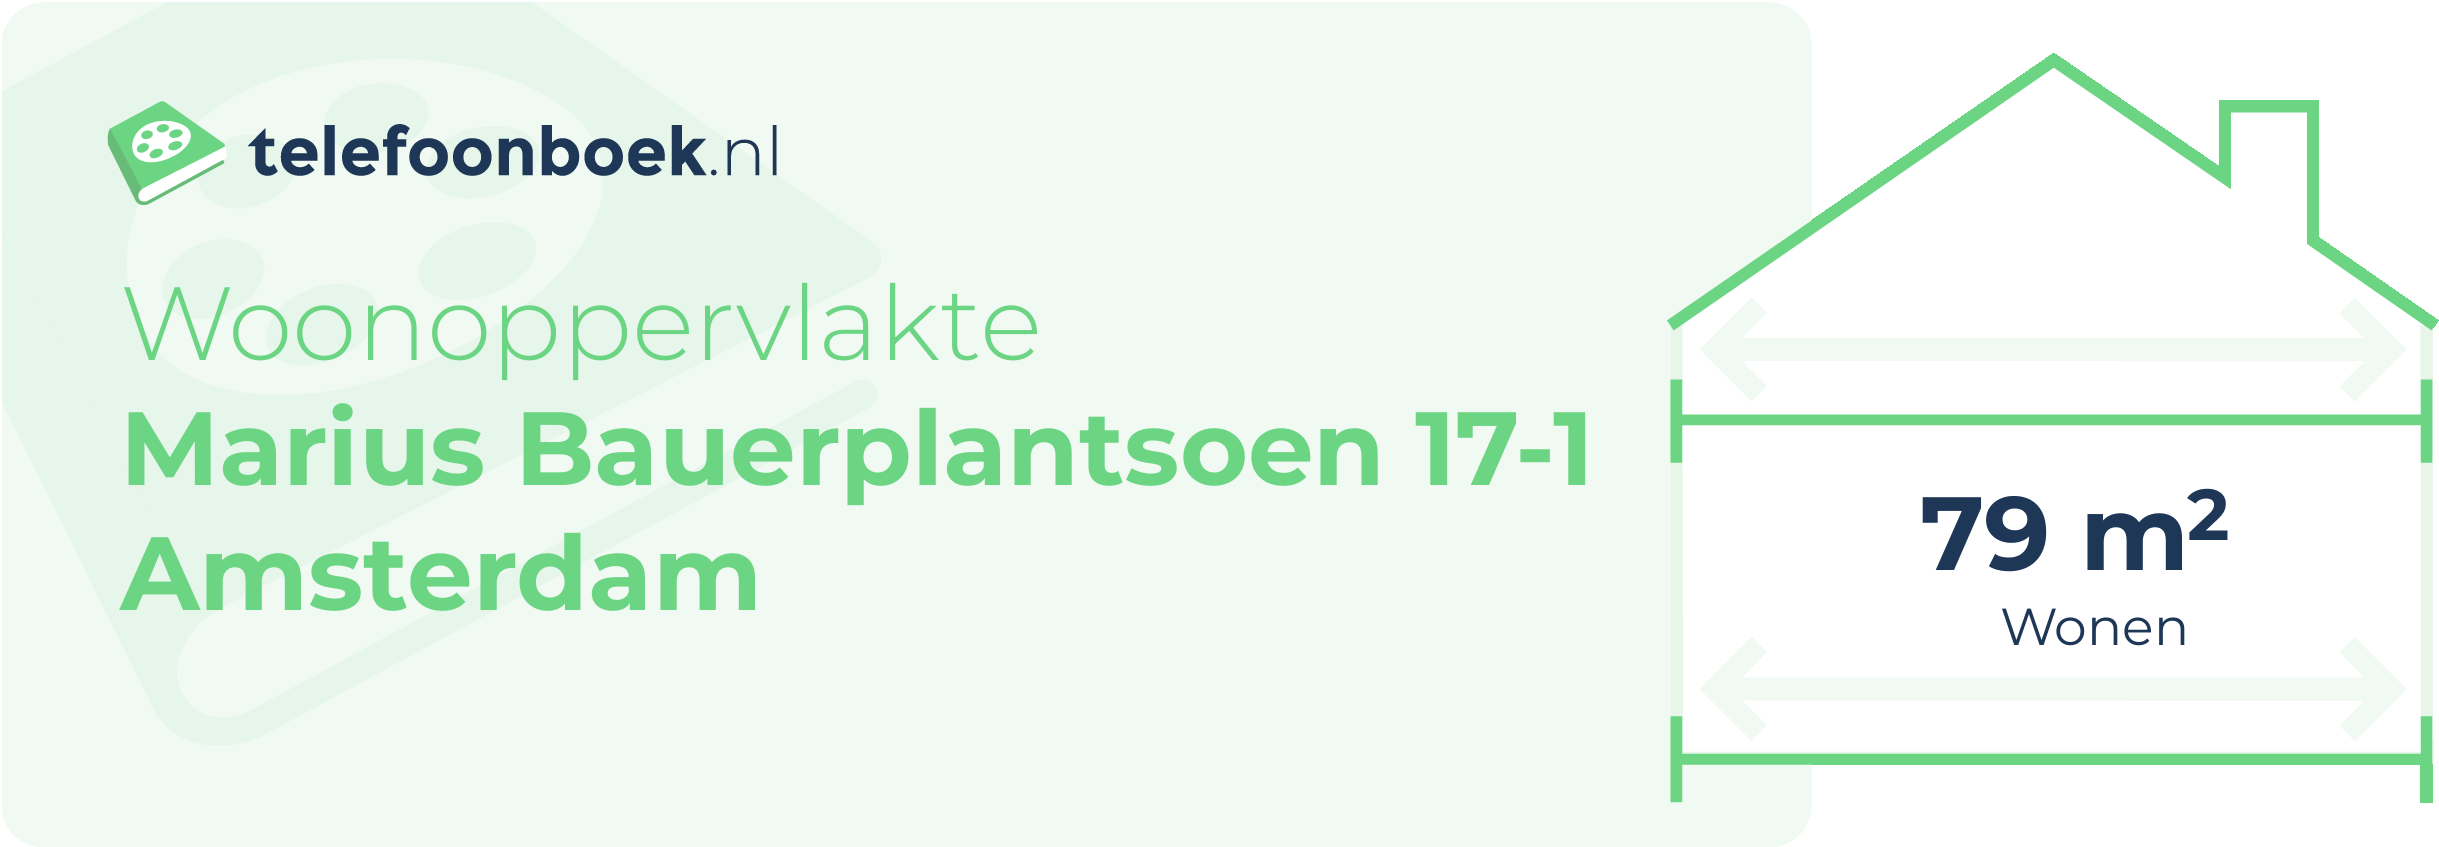 Woonoppervlakte Marius Bauerplantsoen 17-1 Amsterdam